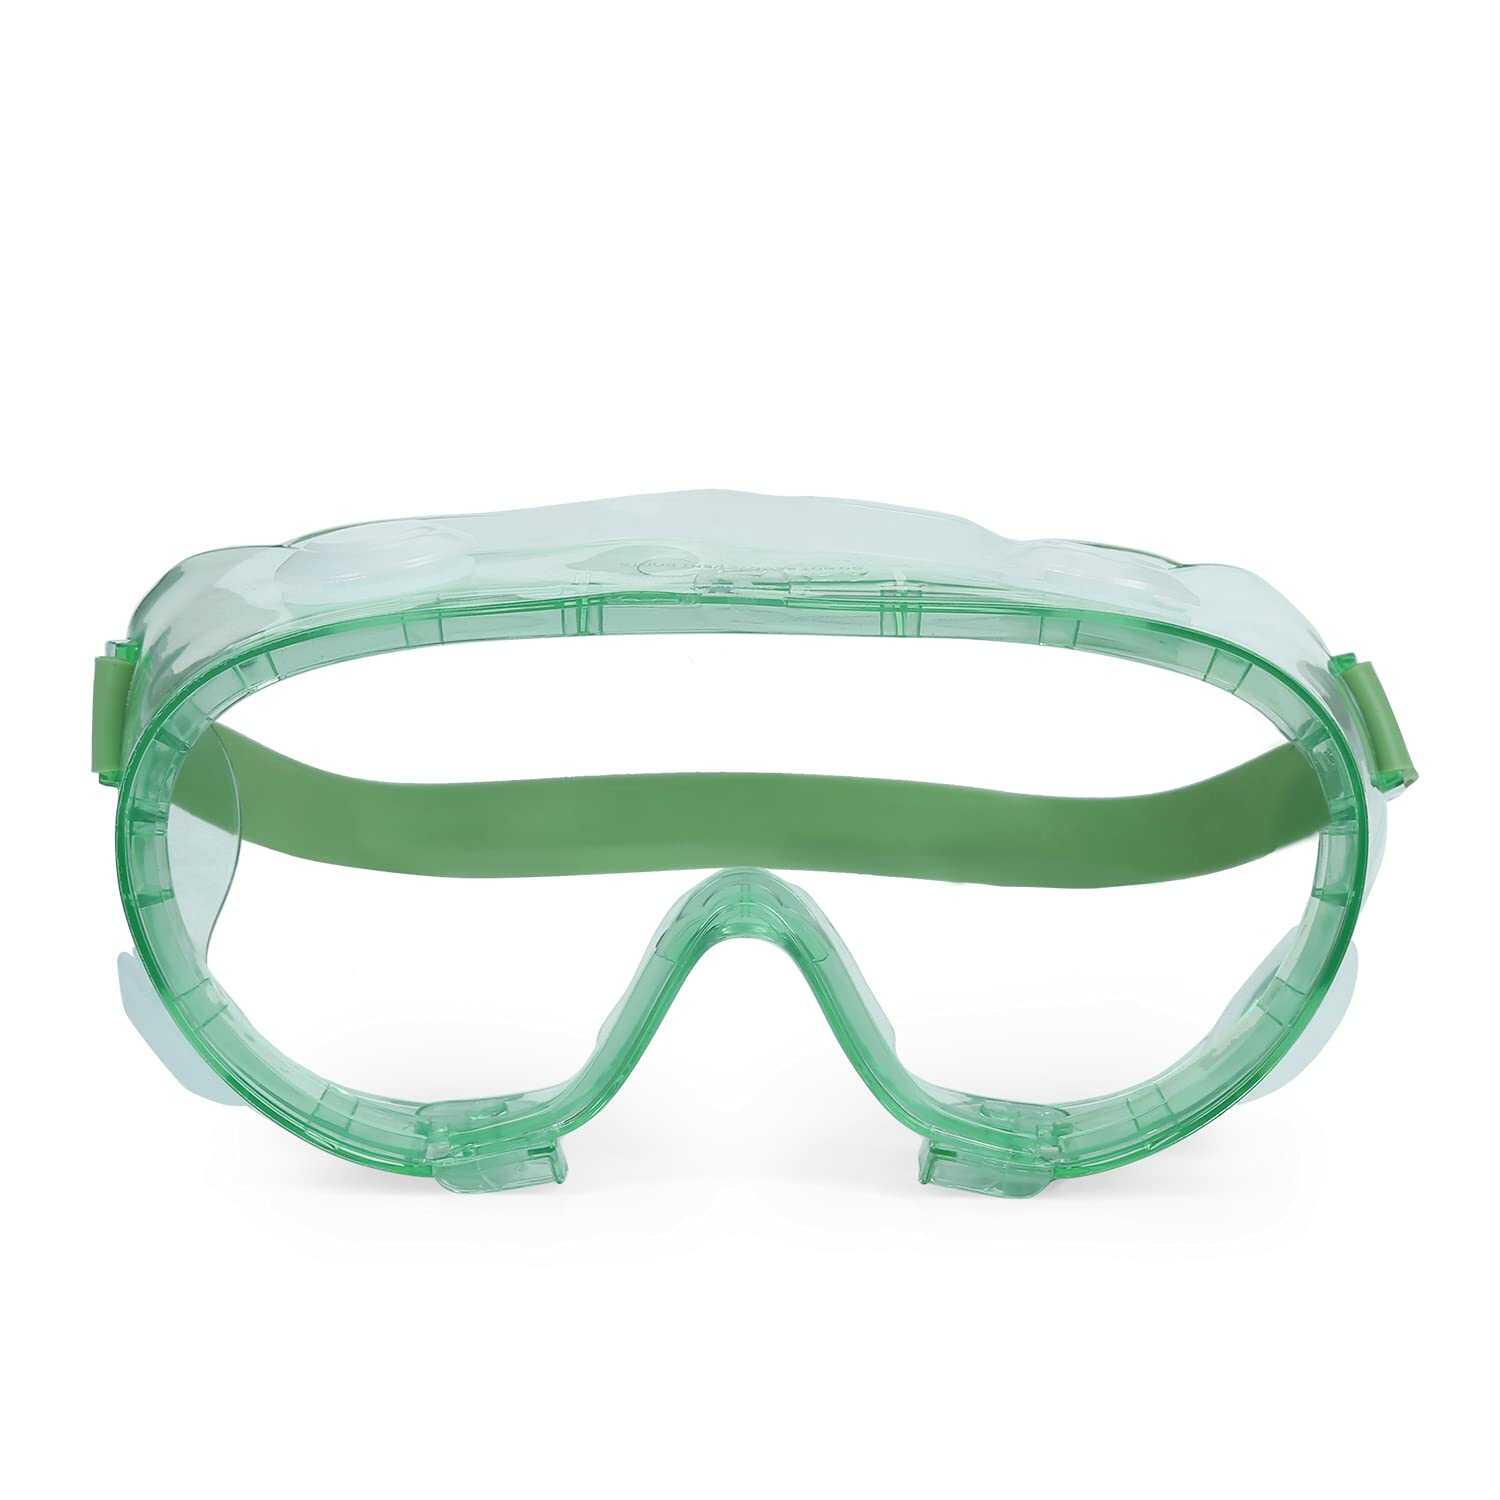 Kleenguard V80 SG34 Splash Protection Eyewear, 16362 ( Pack of 50 Units/Case )